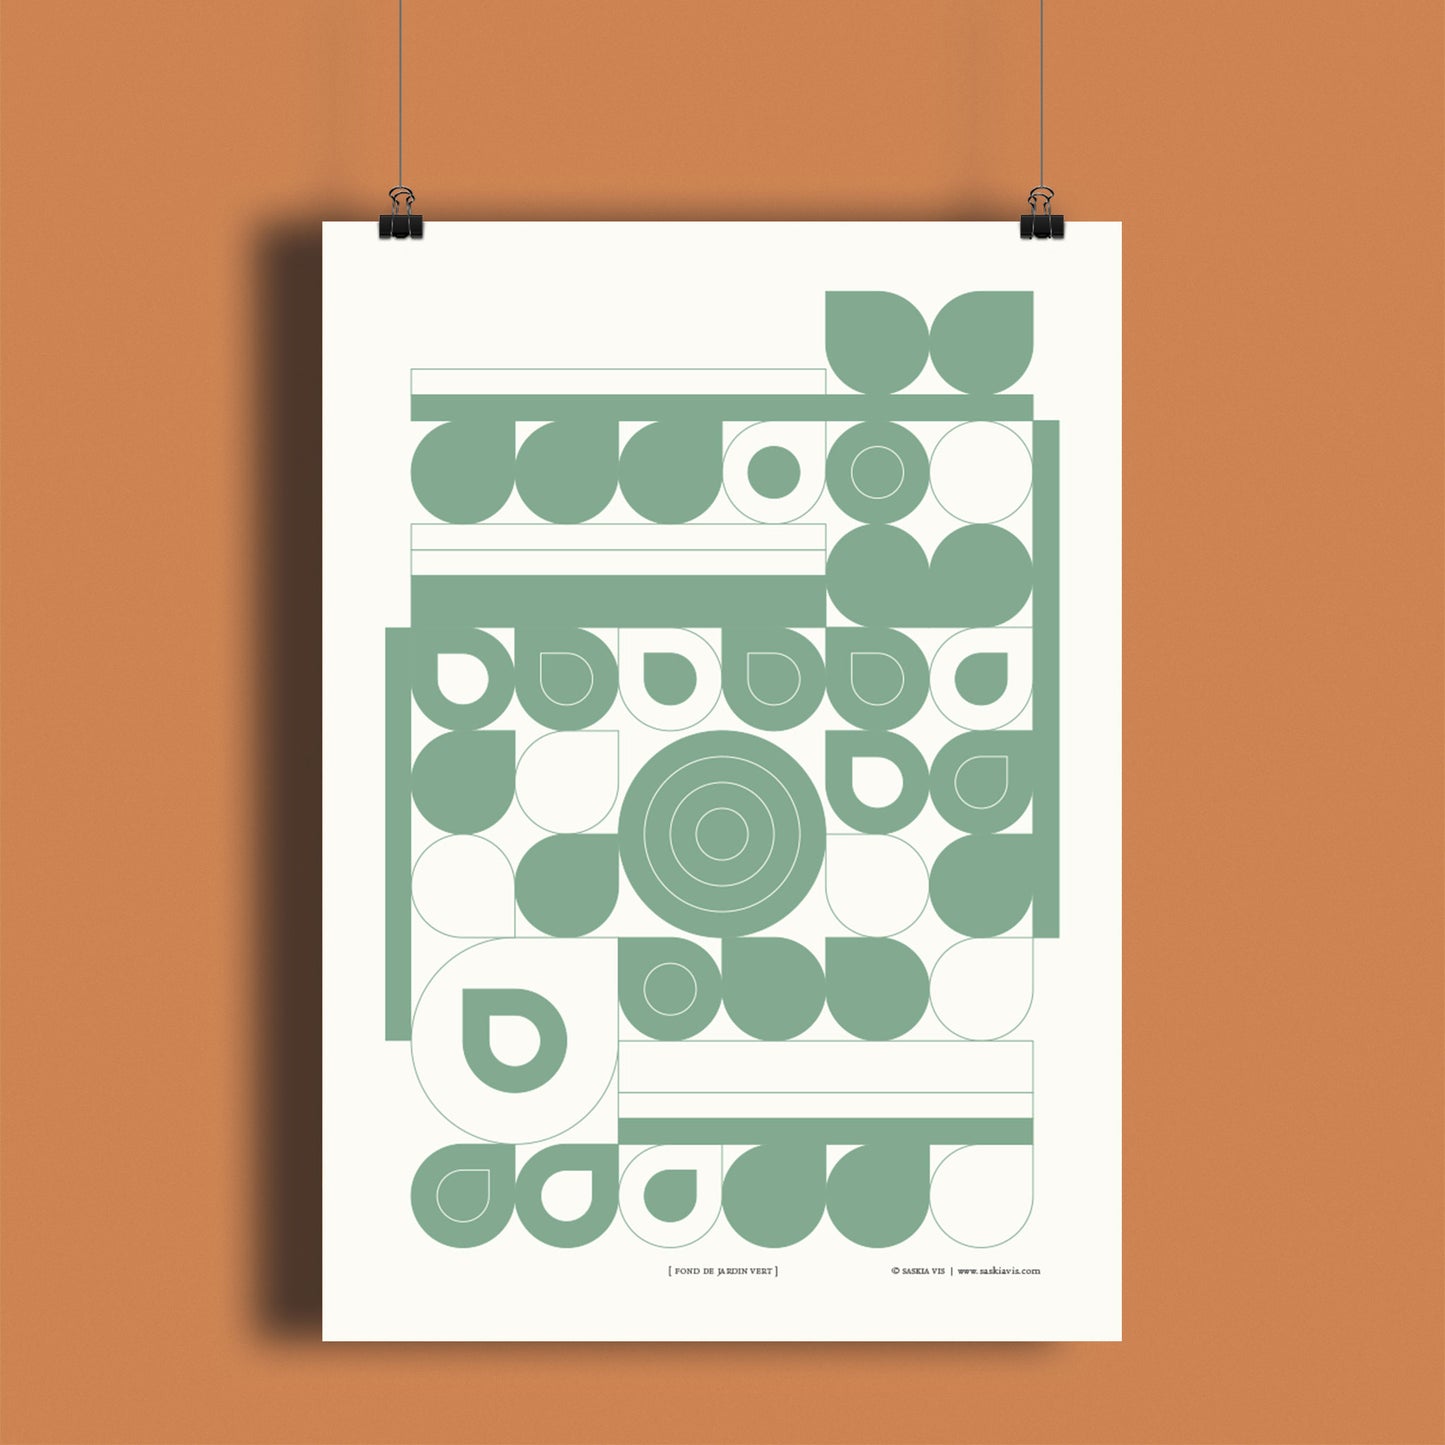 Productafbeelding, poster "fond de jardin vert", hangend aan een warm oranje/bruin gekleurde wand, een overzichtsfoto